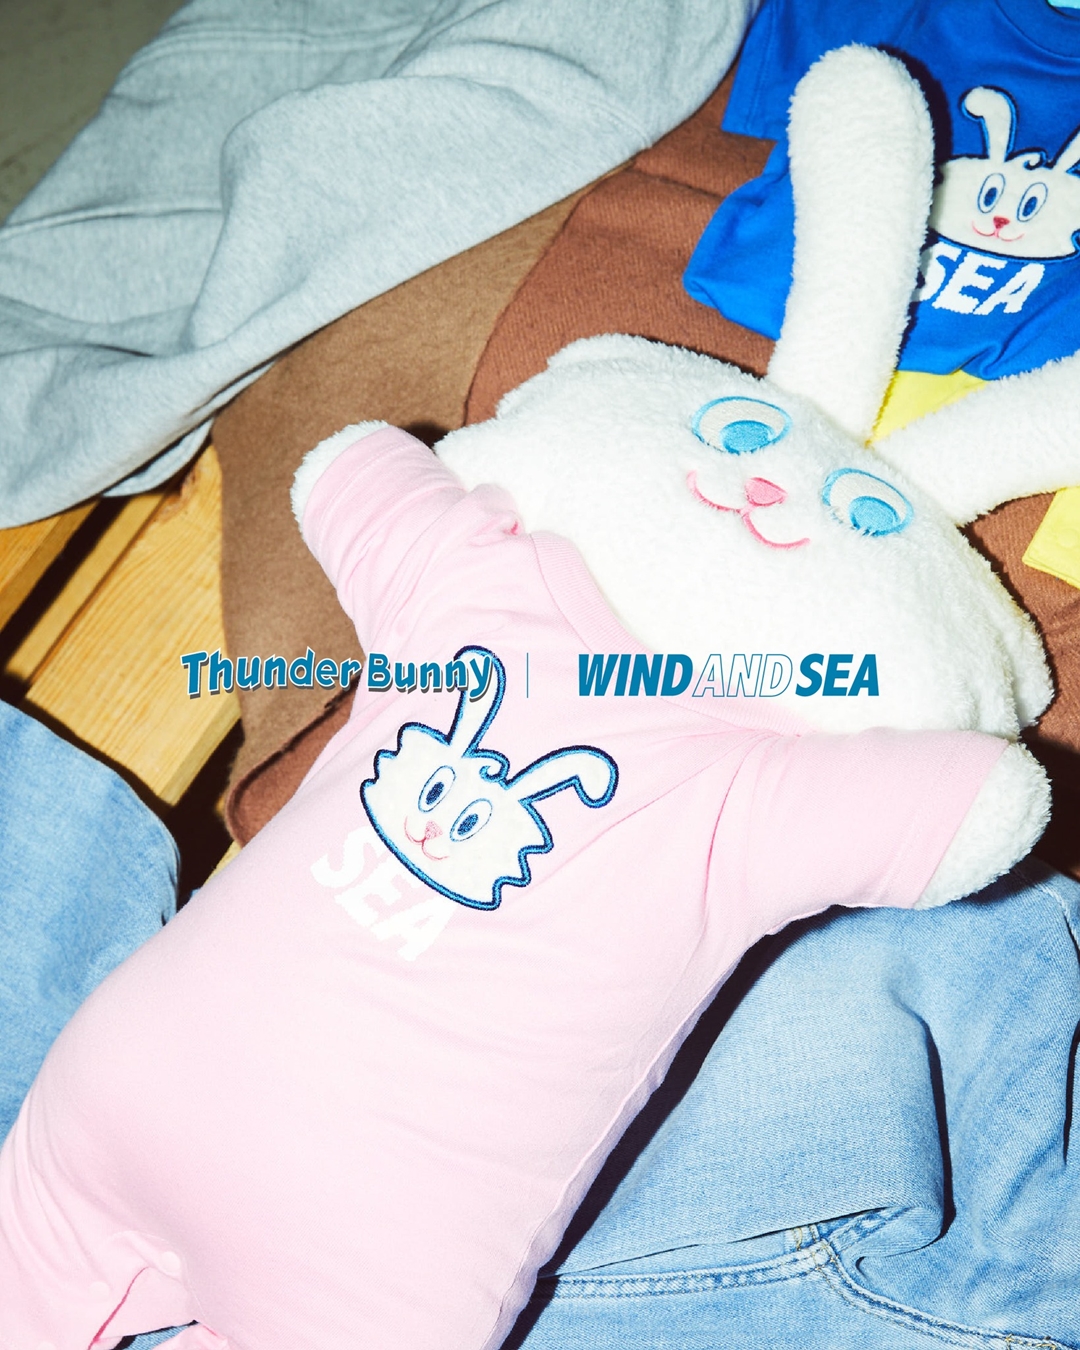 4/8 発売！パラッパラッパーのデザイナー作「Thunder Bunny」x WIND AND SEA コラボレーション (サンダーバニー ウィンダンシー)